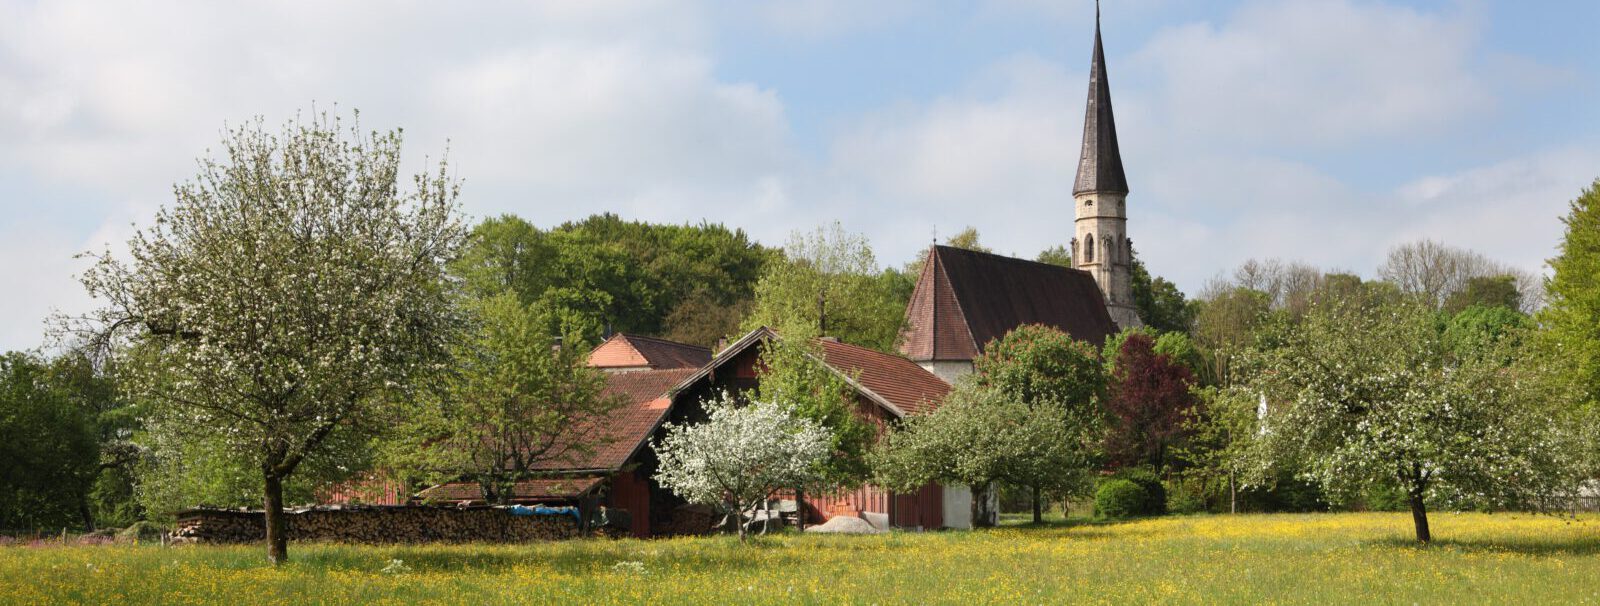 Streuobstwiese mit Heilig Geist Kirche im Hintergrund © Burghauser Touristik GmbH